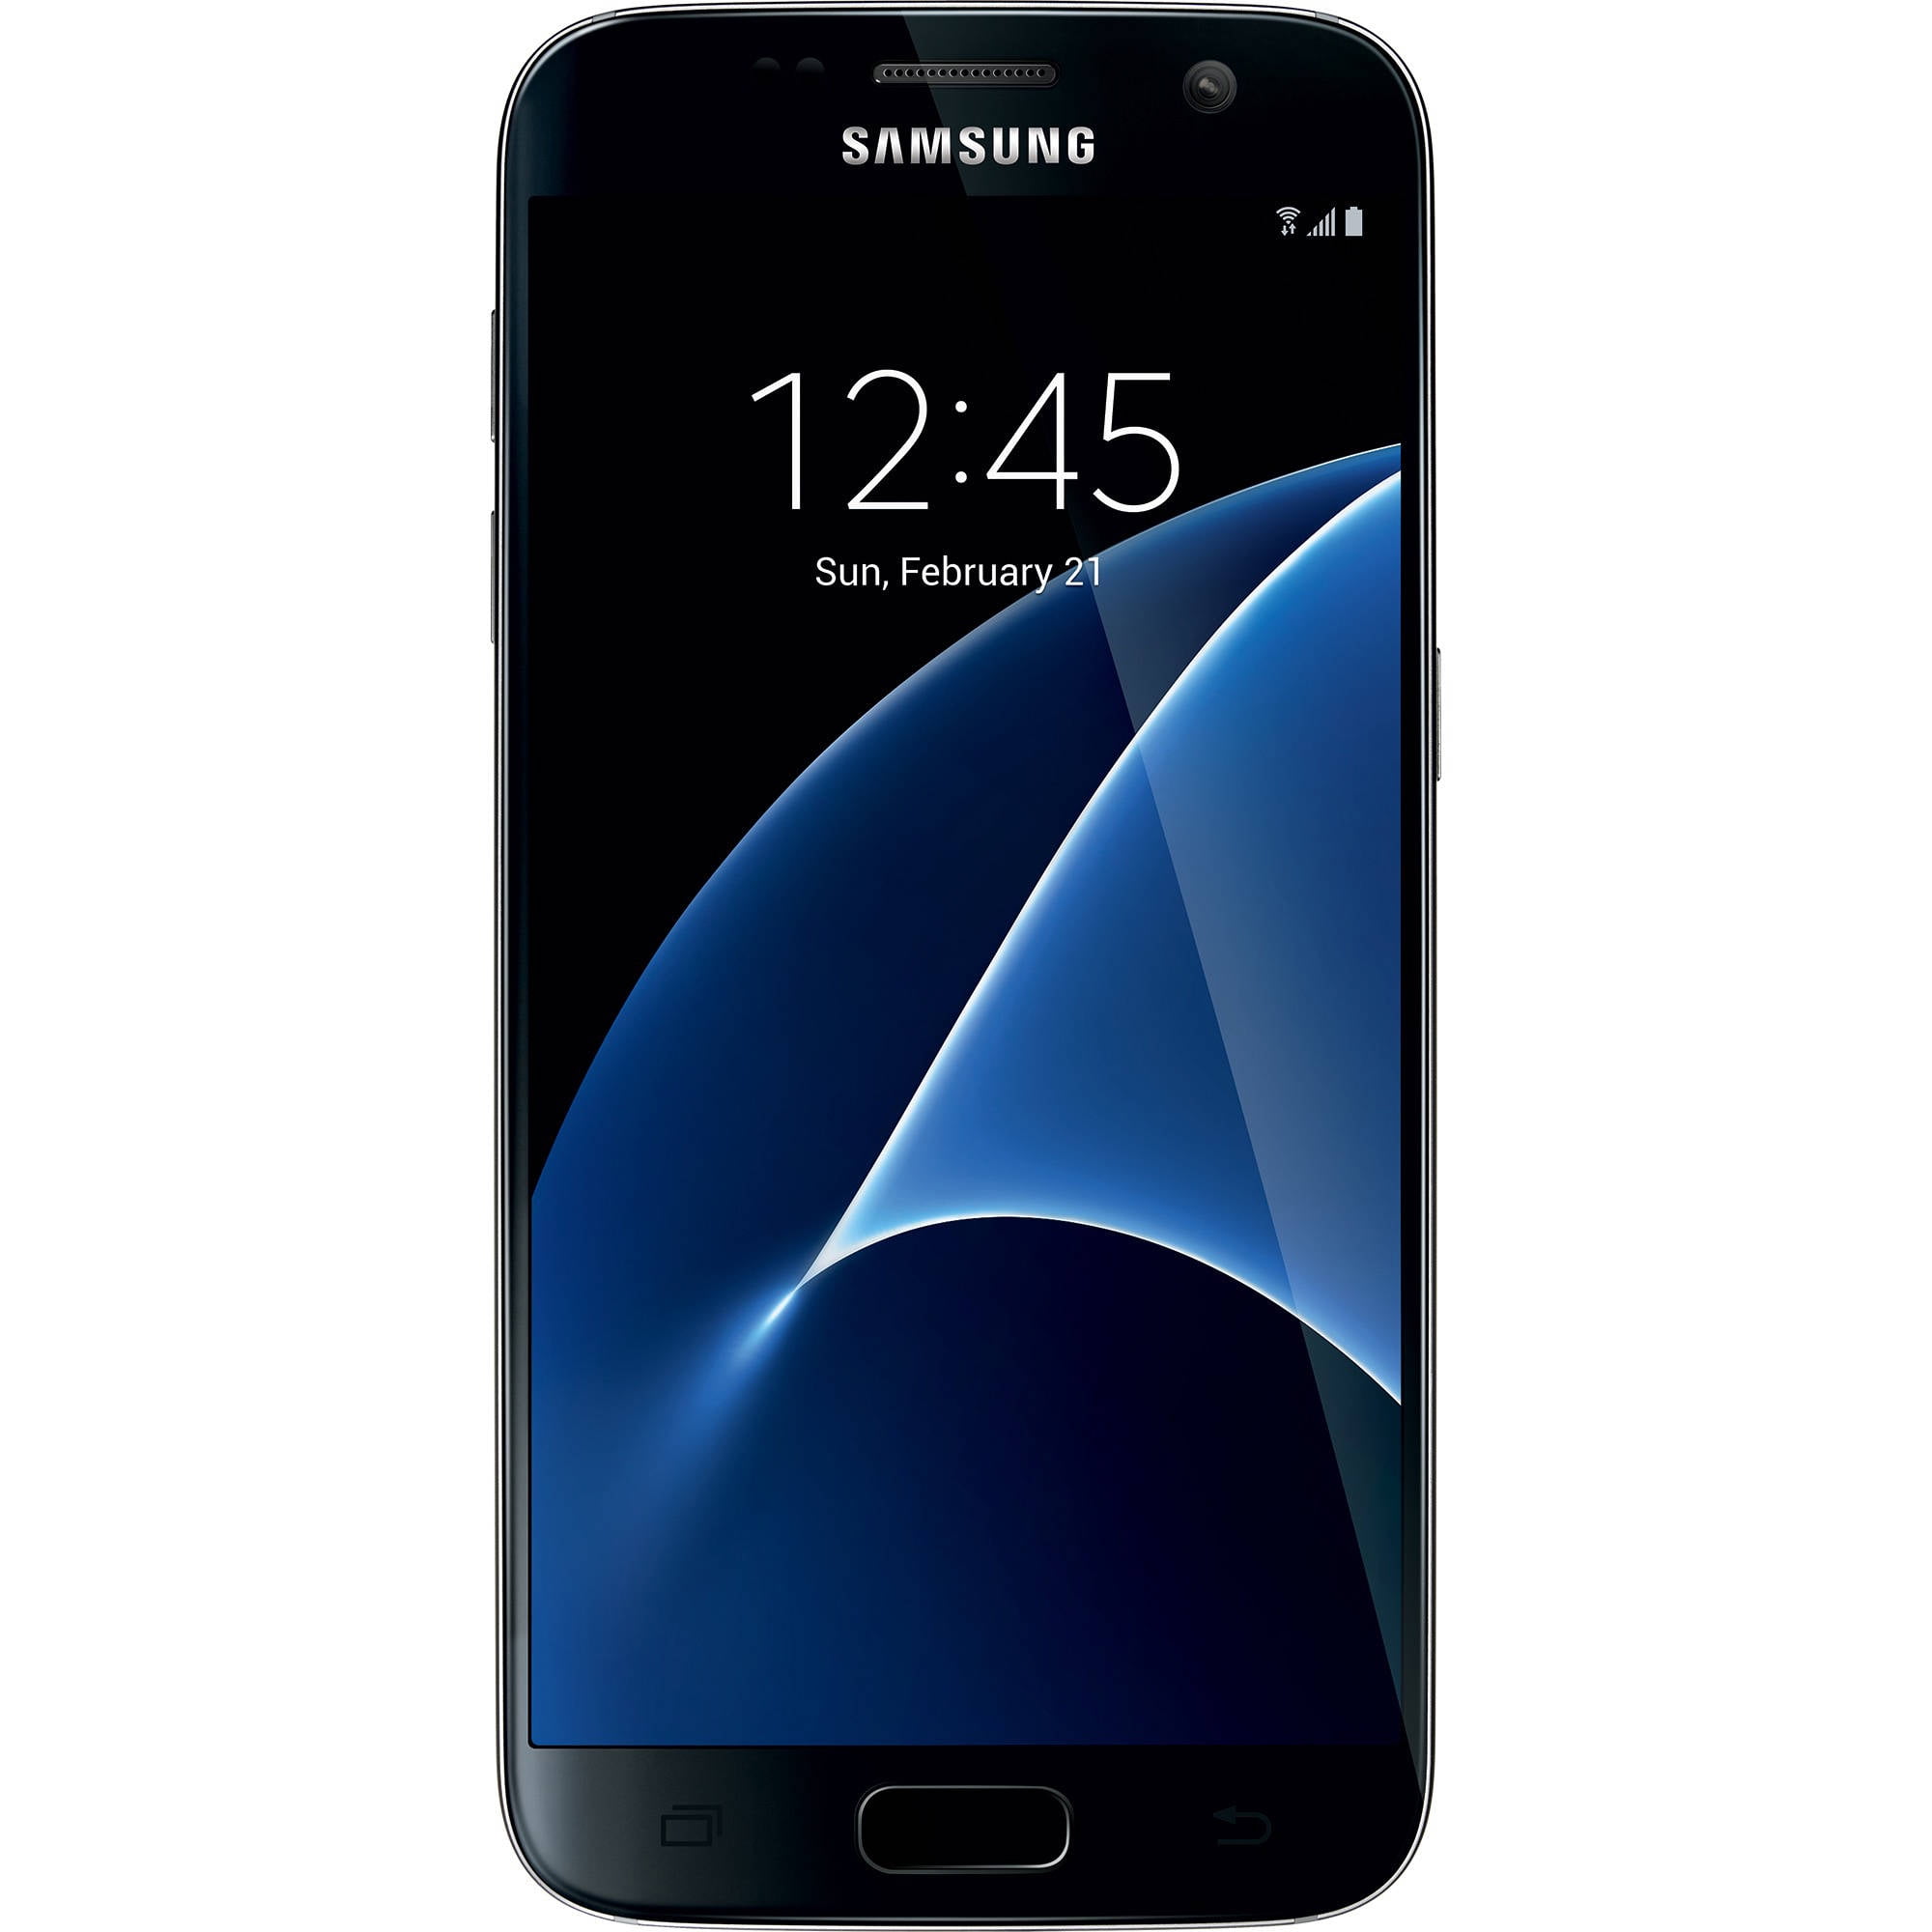 gevogelte Wet en regelgeving typist Total Wireless SAMSUNG Galaxy S7 4G LTE, 32GB Black - Prepaid Smartphone -  Walmart.com